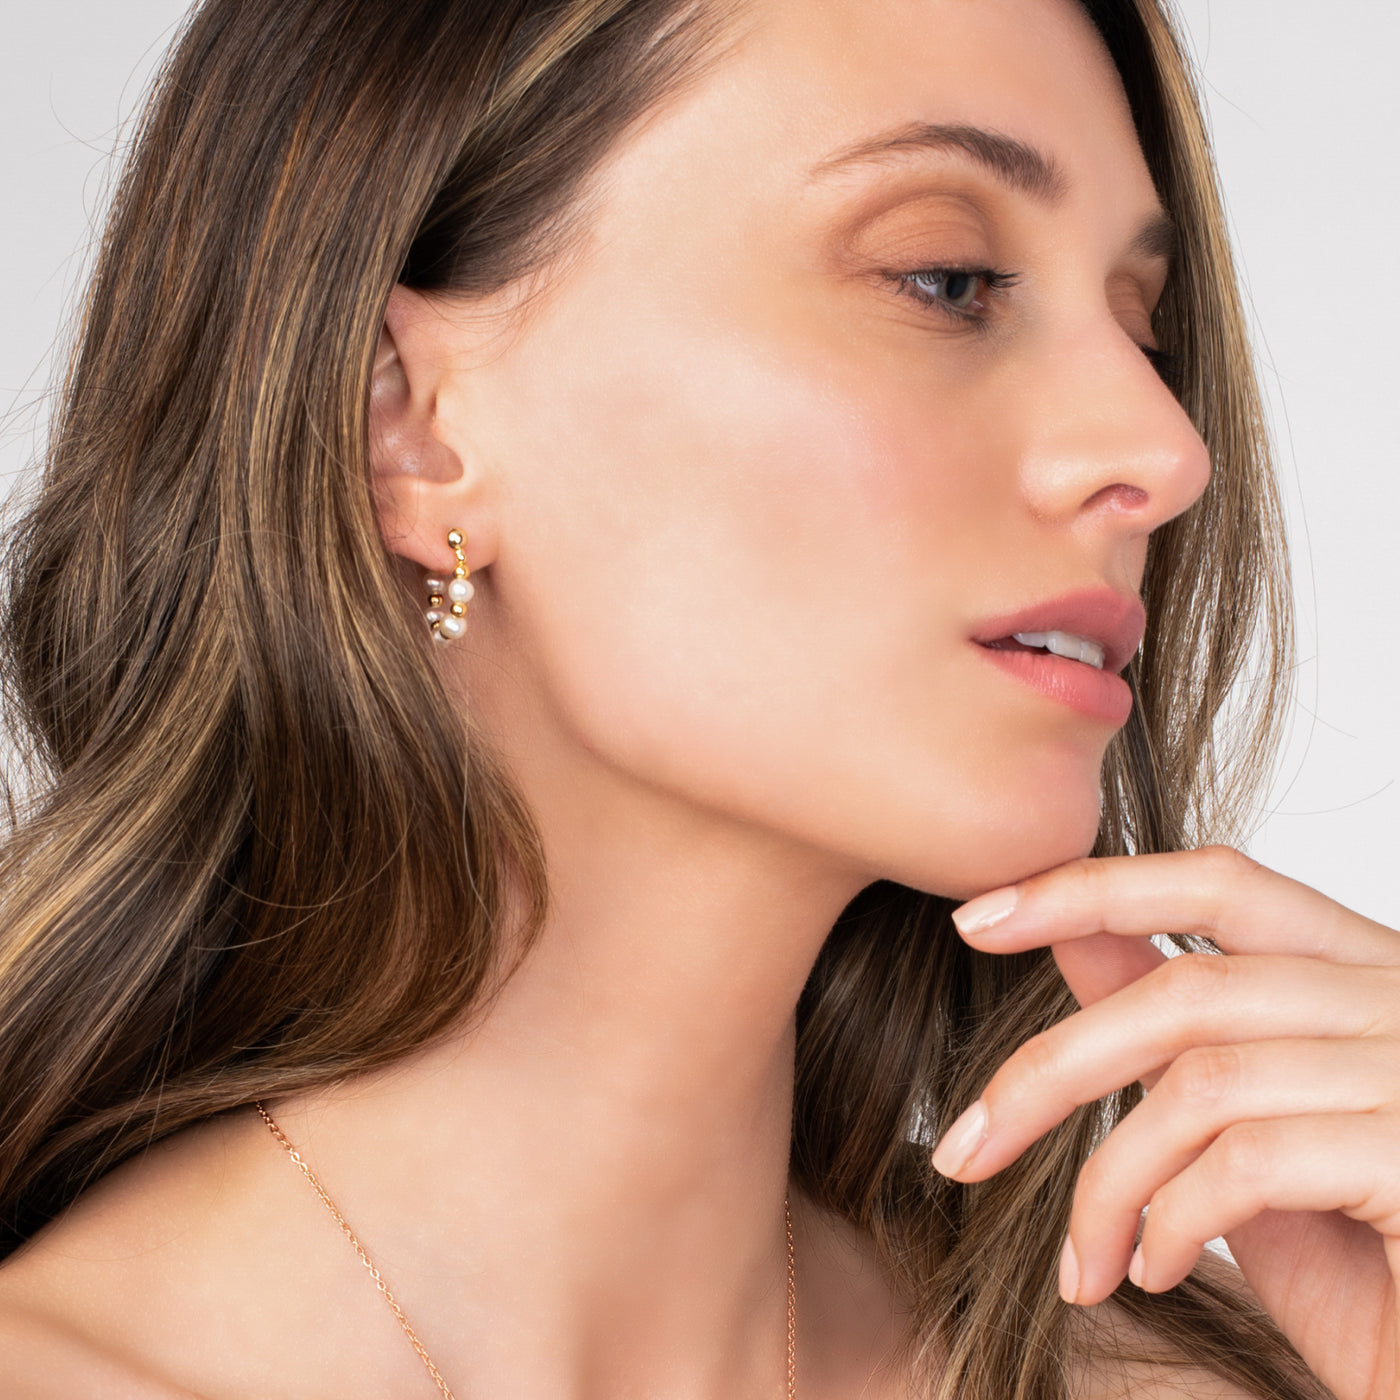 Teanna Pearl Earring | Angela Jewellery Australia